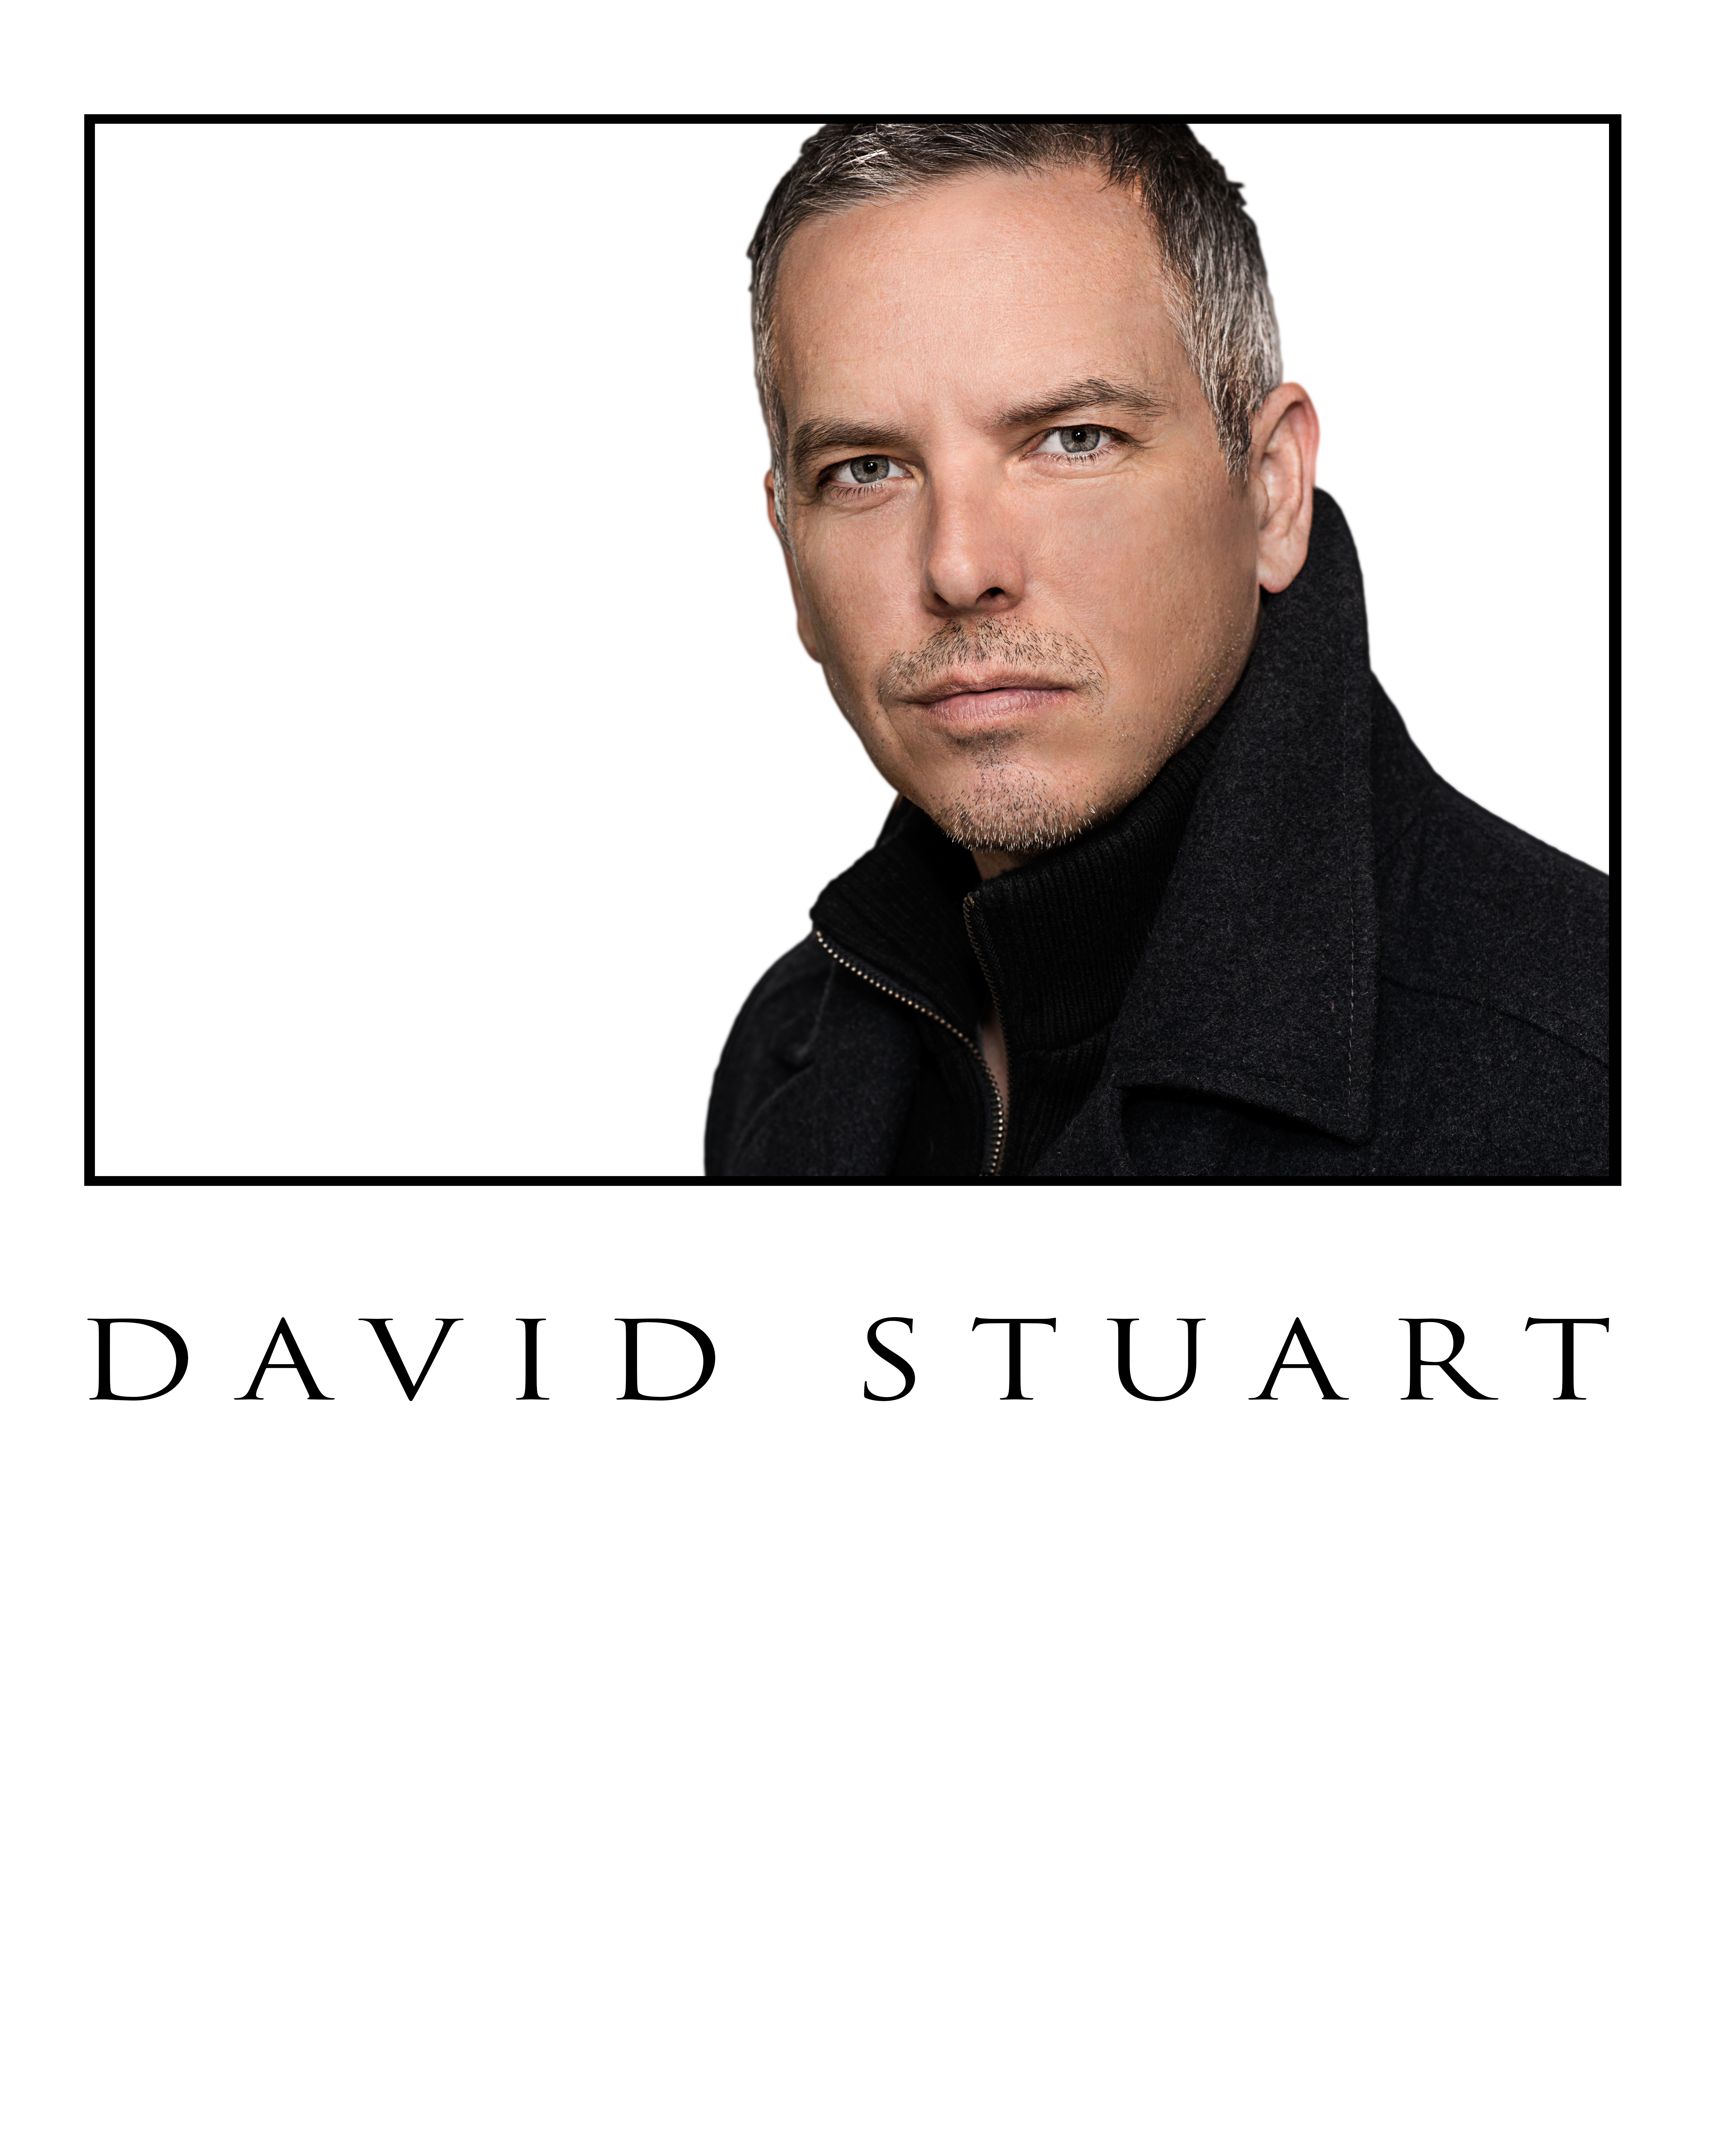 David Stuart